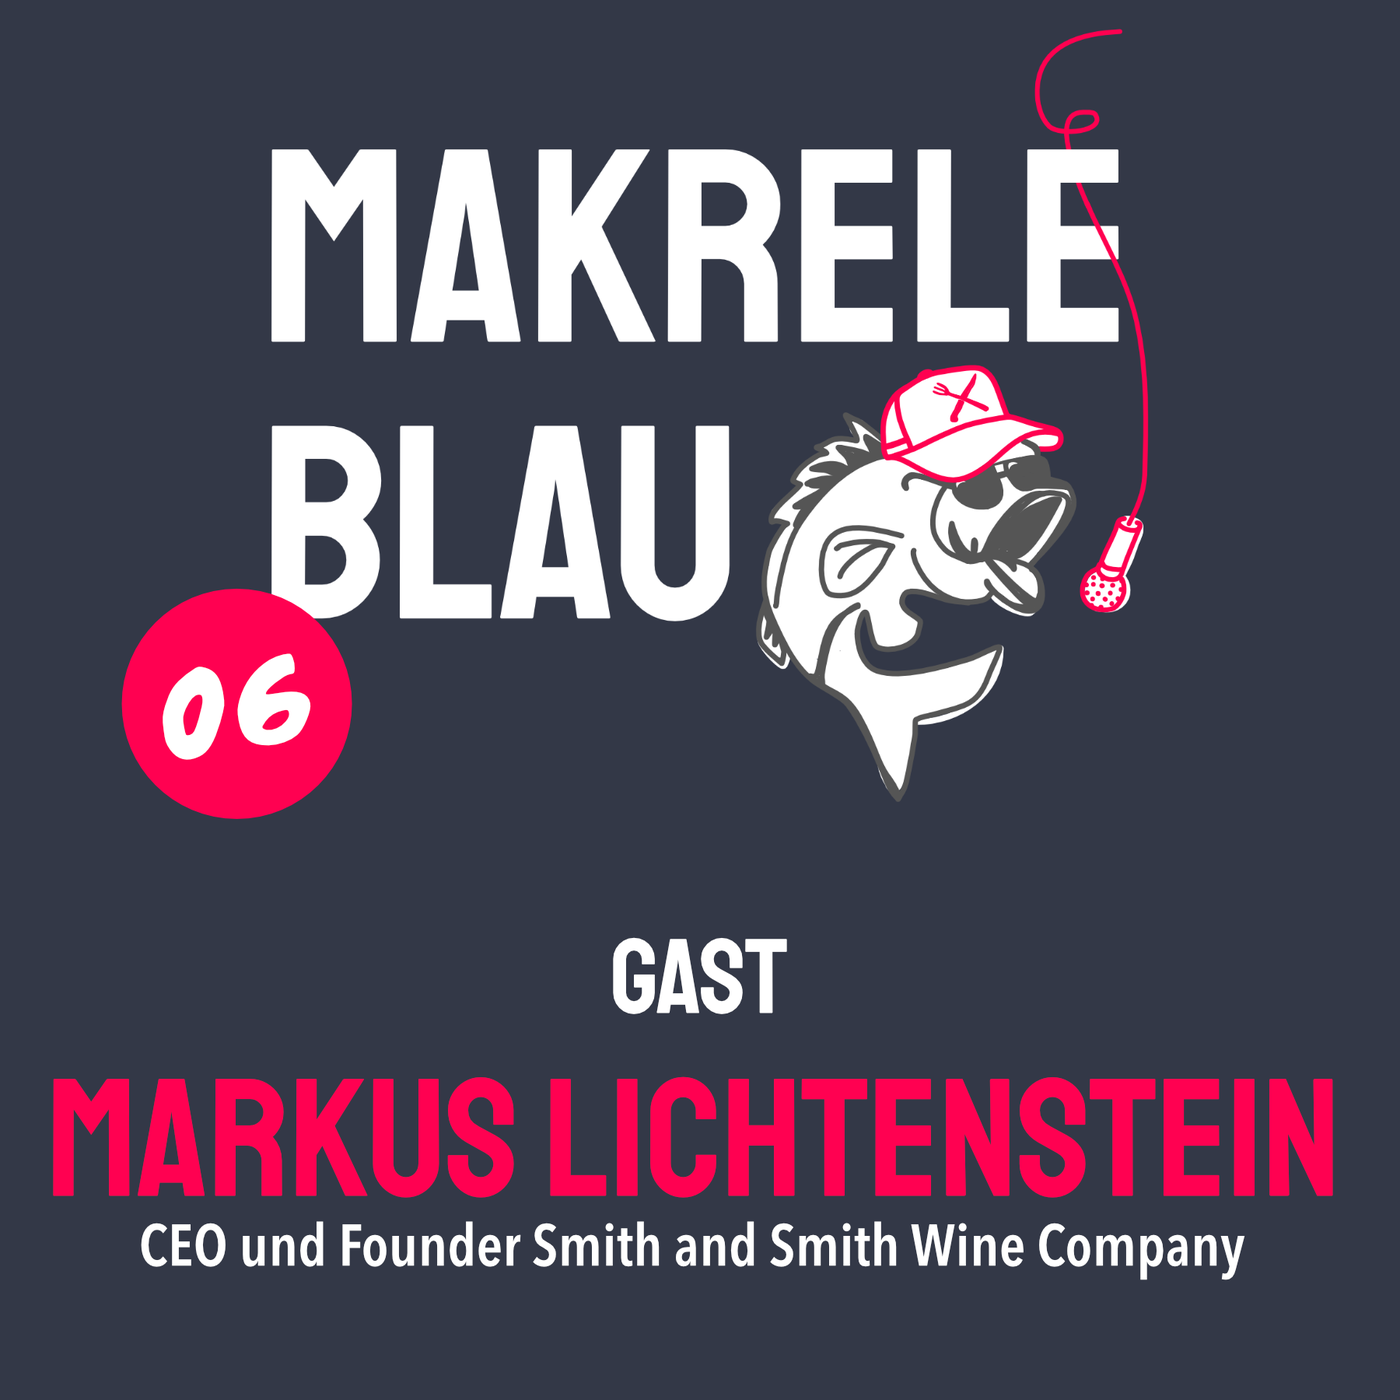 Makrele Blau #06 – Rein, Wein und wieder Heim, mit em Markus Lichtenstein